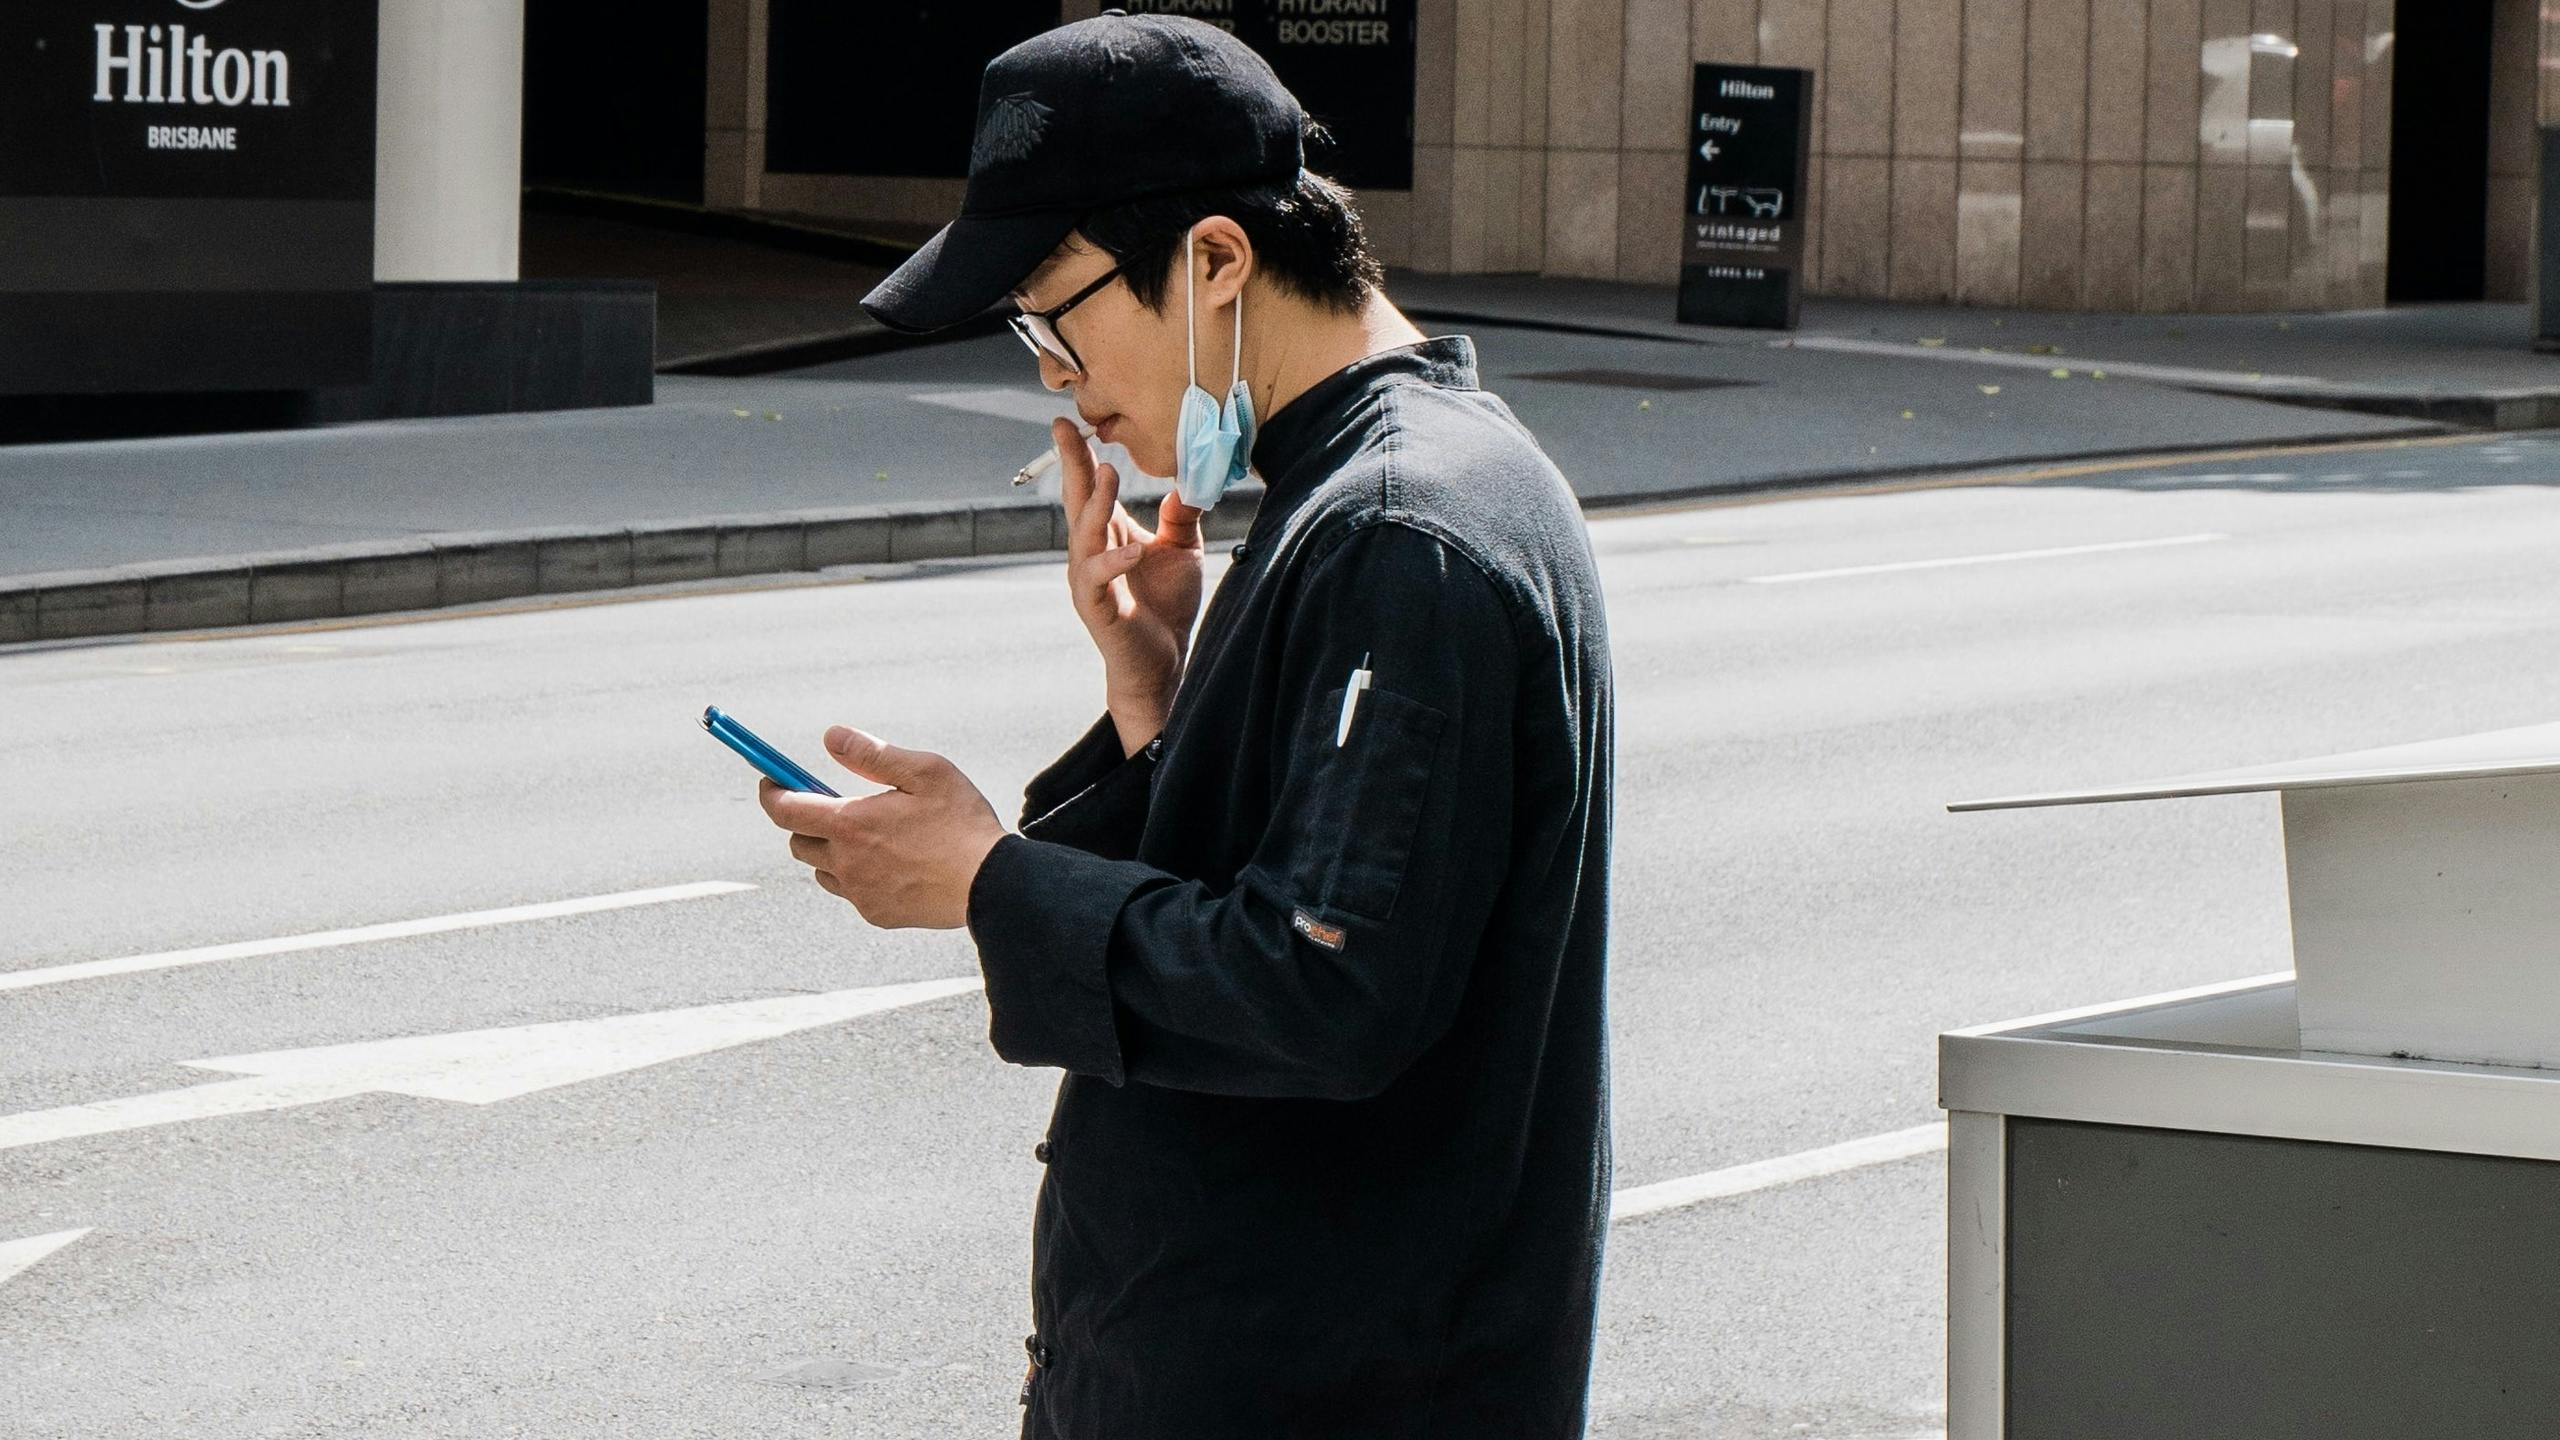 Man smoking while checking phone